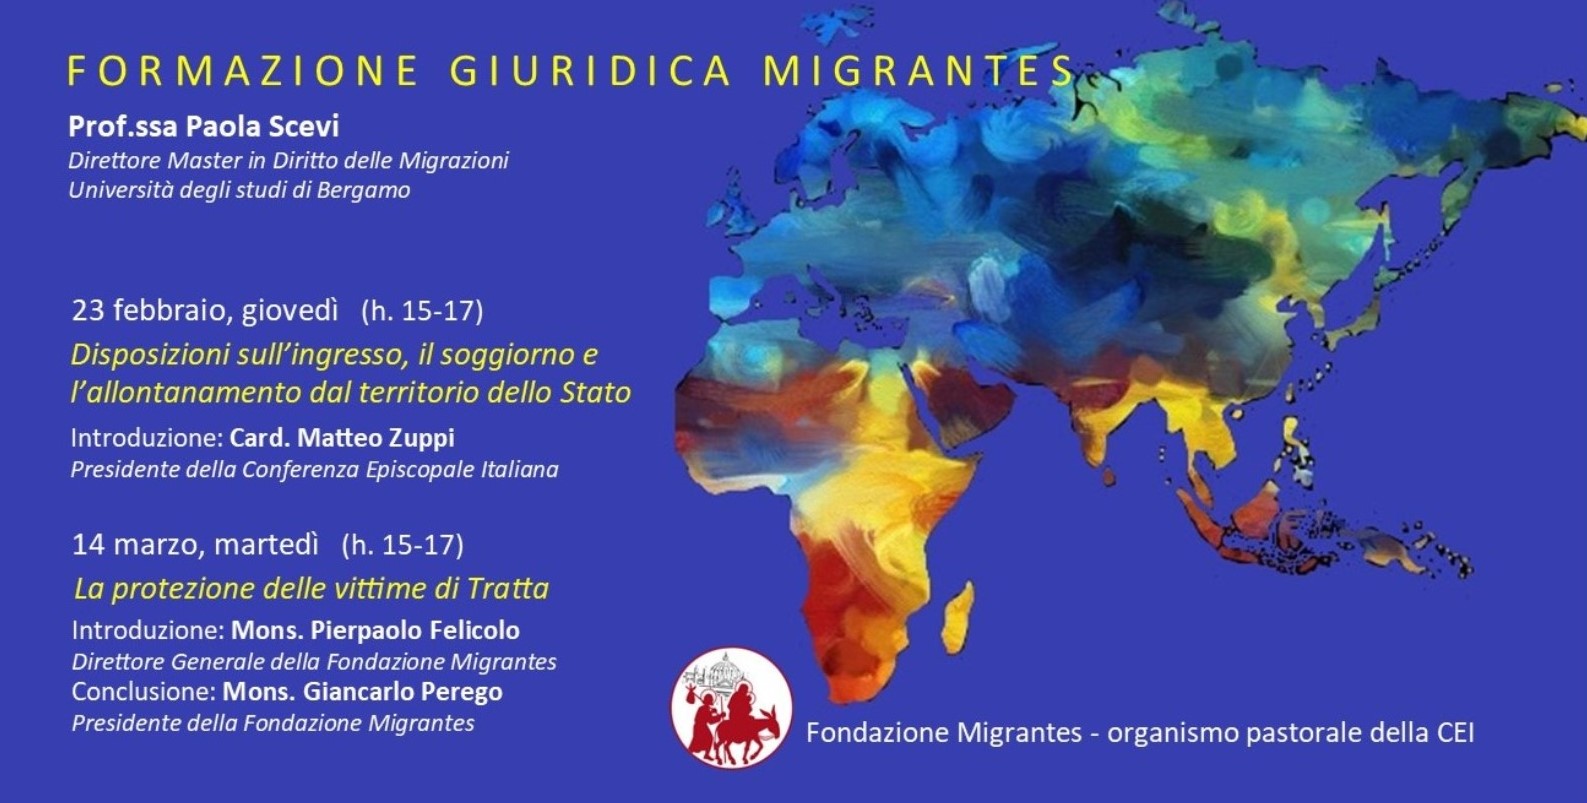 Formazione Giuridica Migrantes